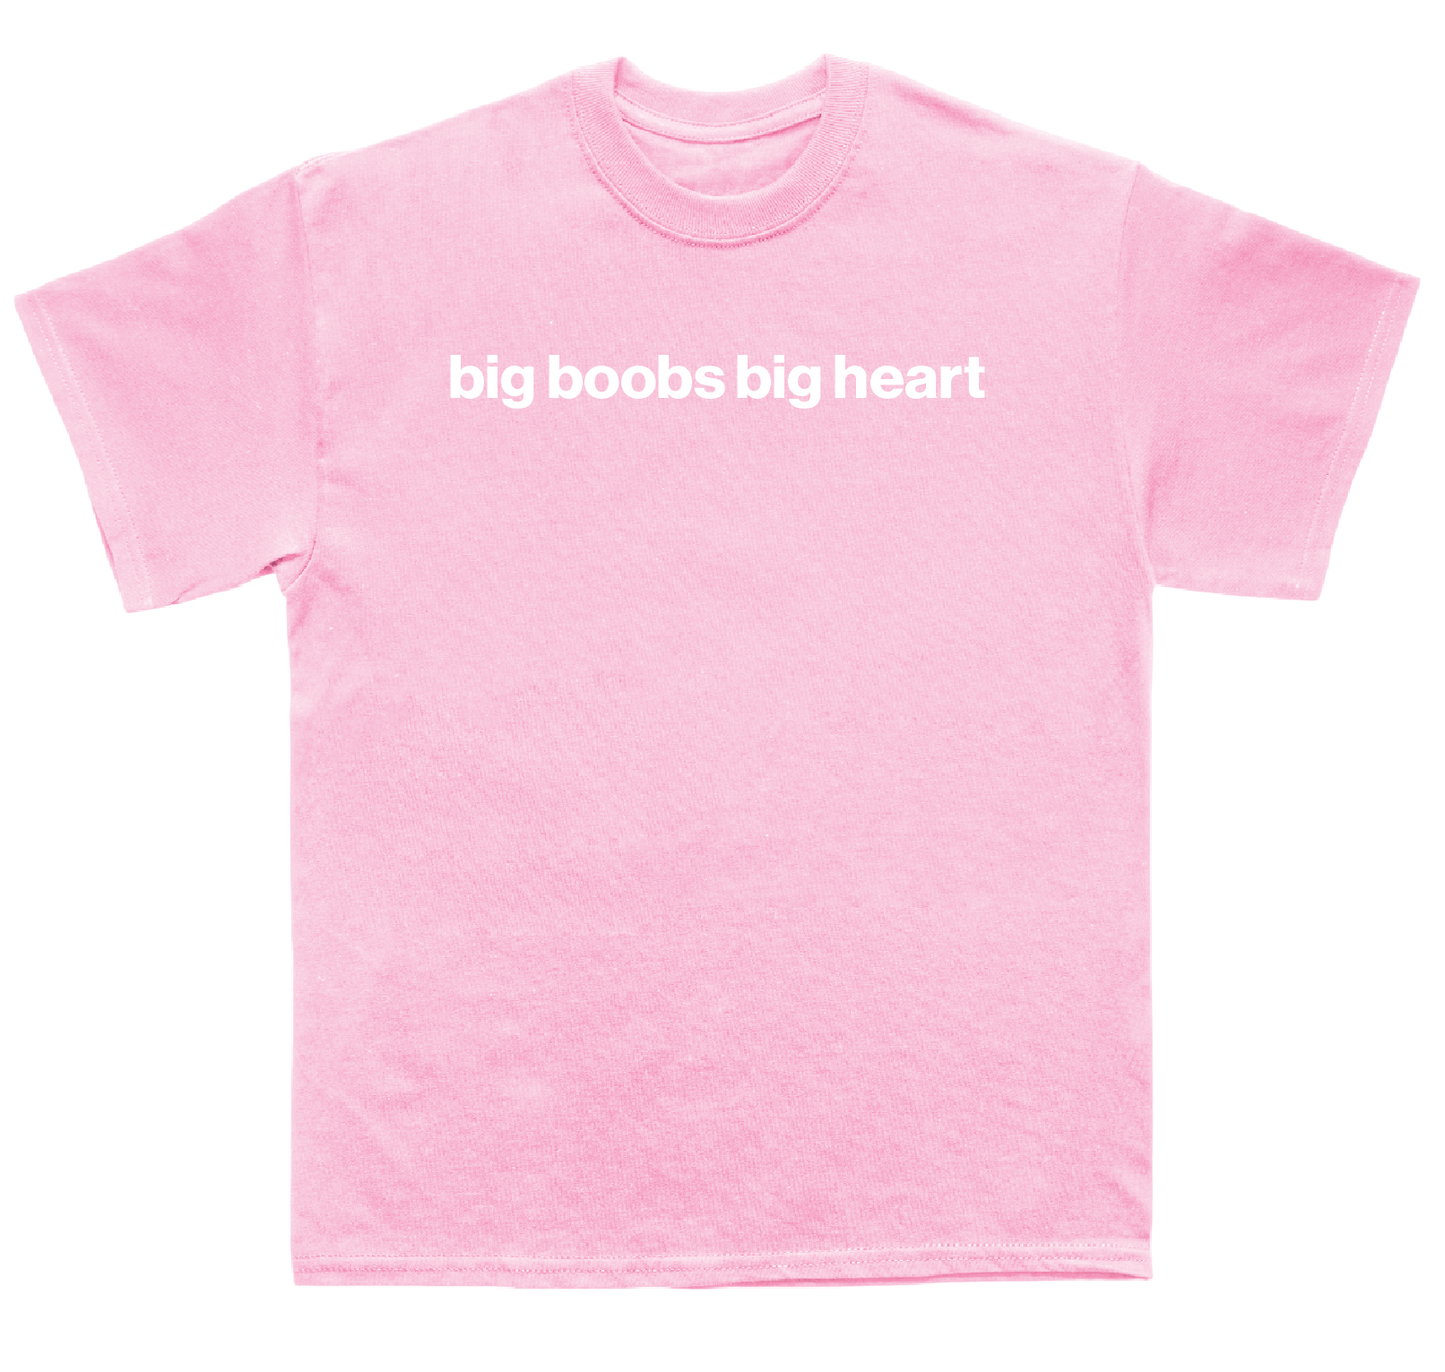 big boobs big heart shirt